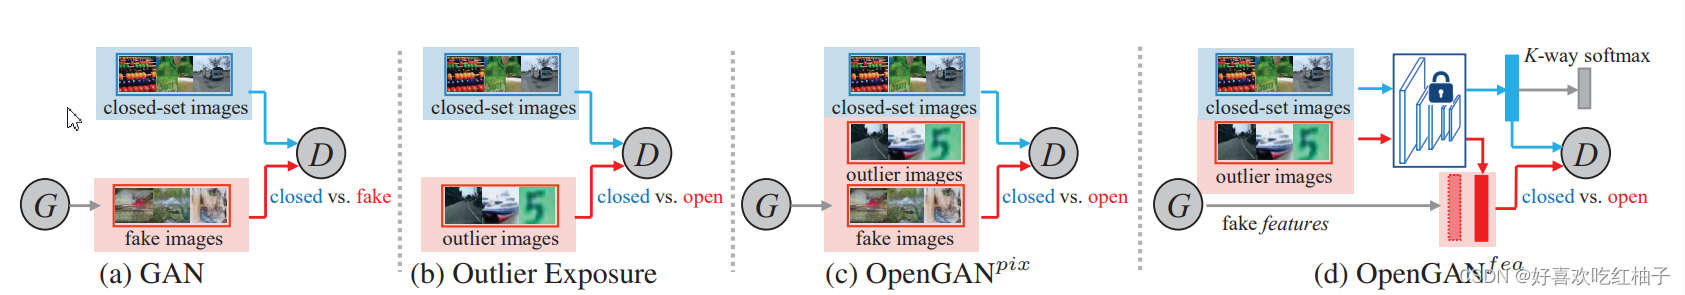 【开放集检测】OpenGAN: Open-Set Recognition via Open Data Generation 论文阅读